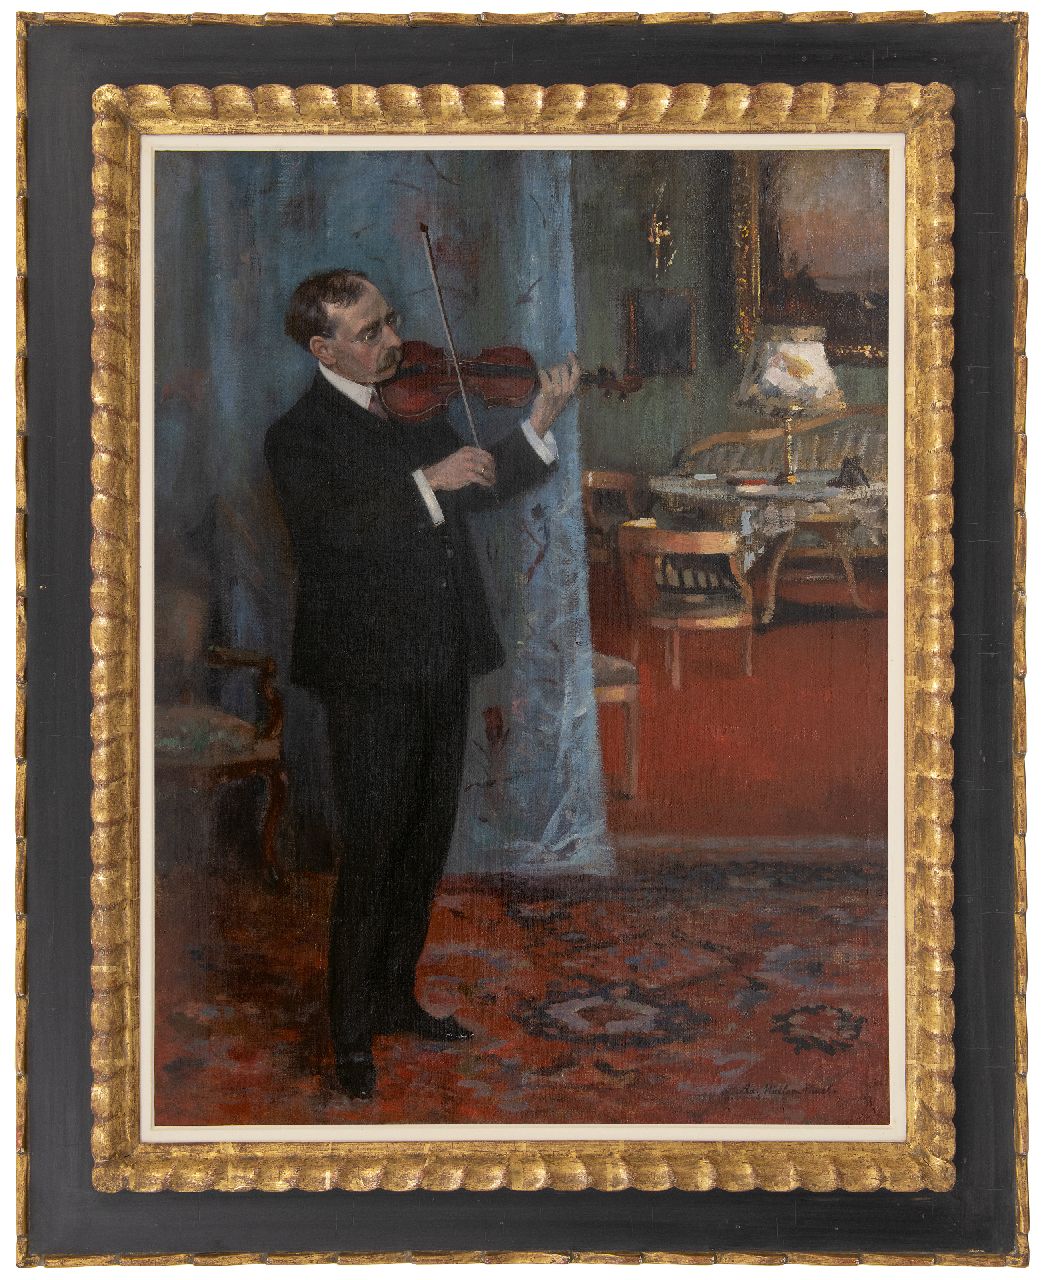 Müller-Cassel A.L.  | Adolf Leonhard Müller-Cassel, De vioolspeler, olieverf op doek 77,6 x 58,9 cm, gesigneerd rechtsonder